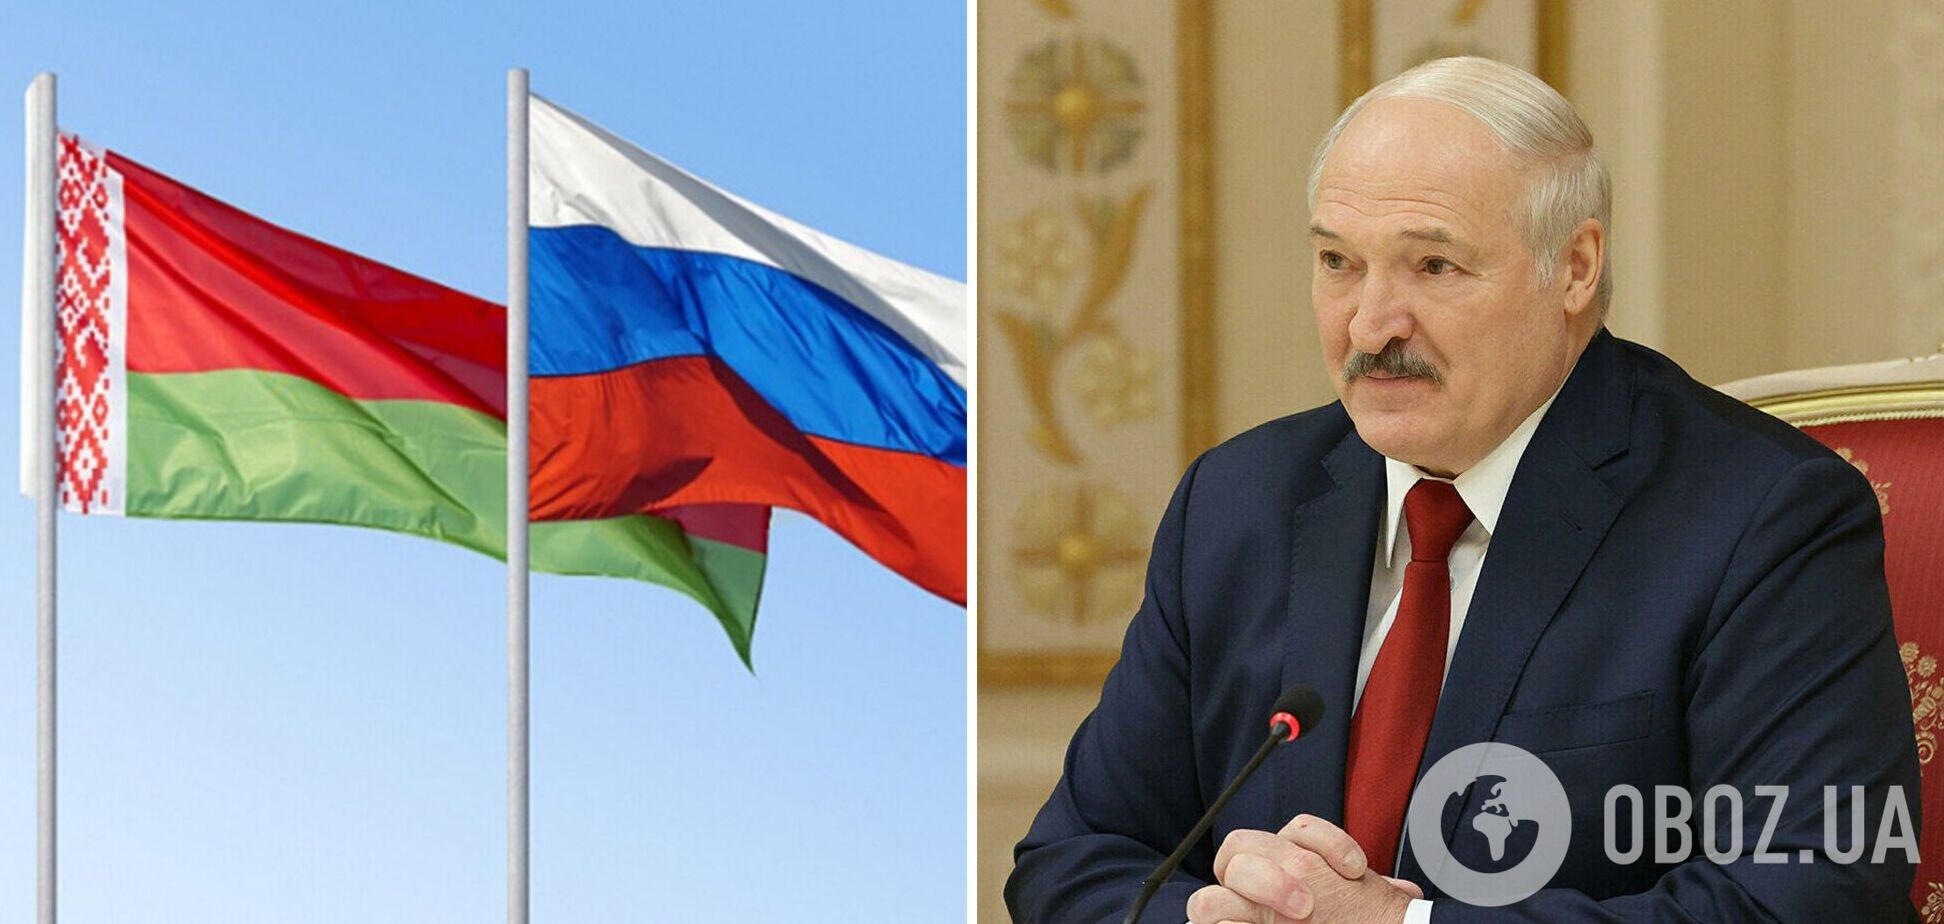 'Ломанем так, что мало не покажется': Лукашенко пригрозил ответом Западу. Видео